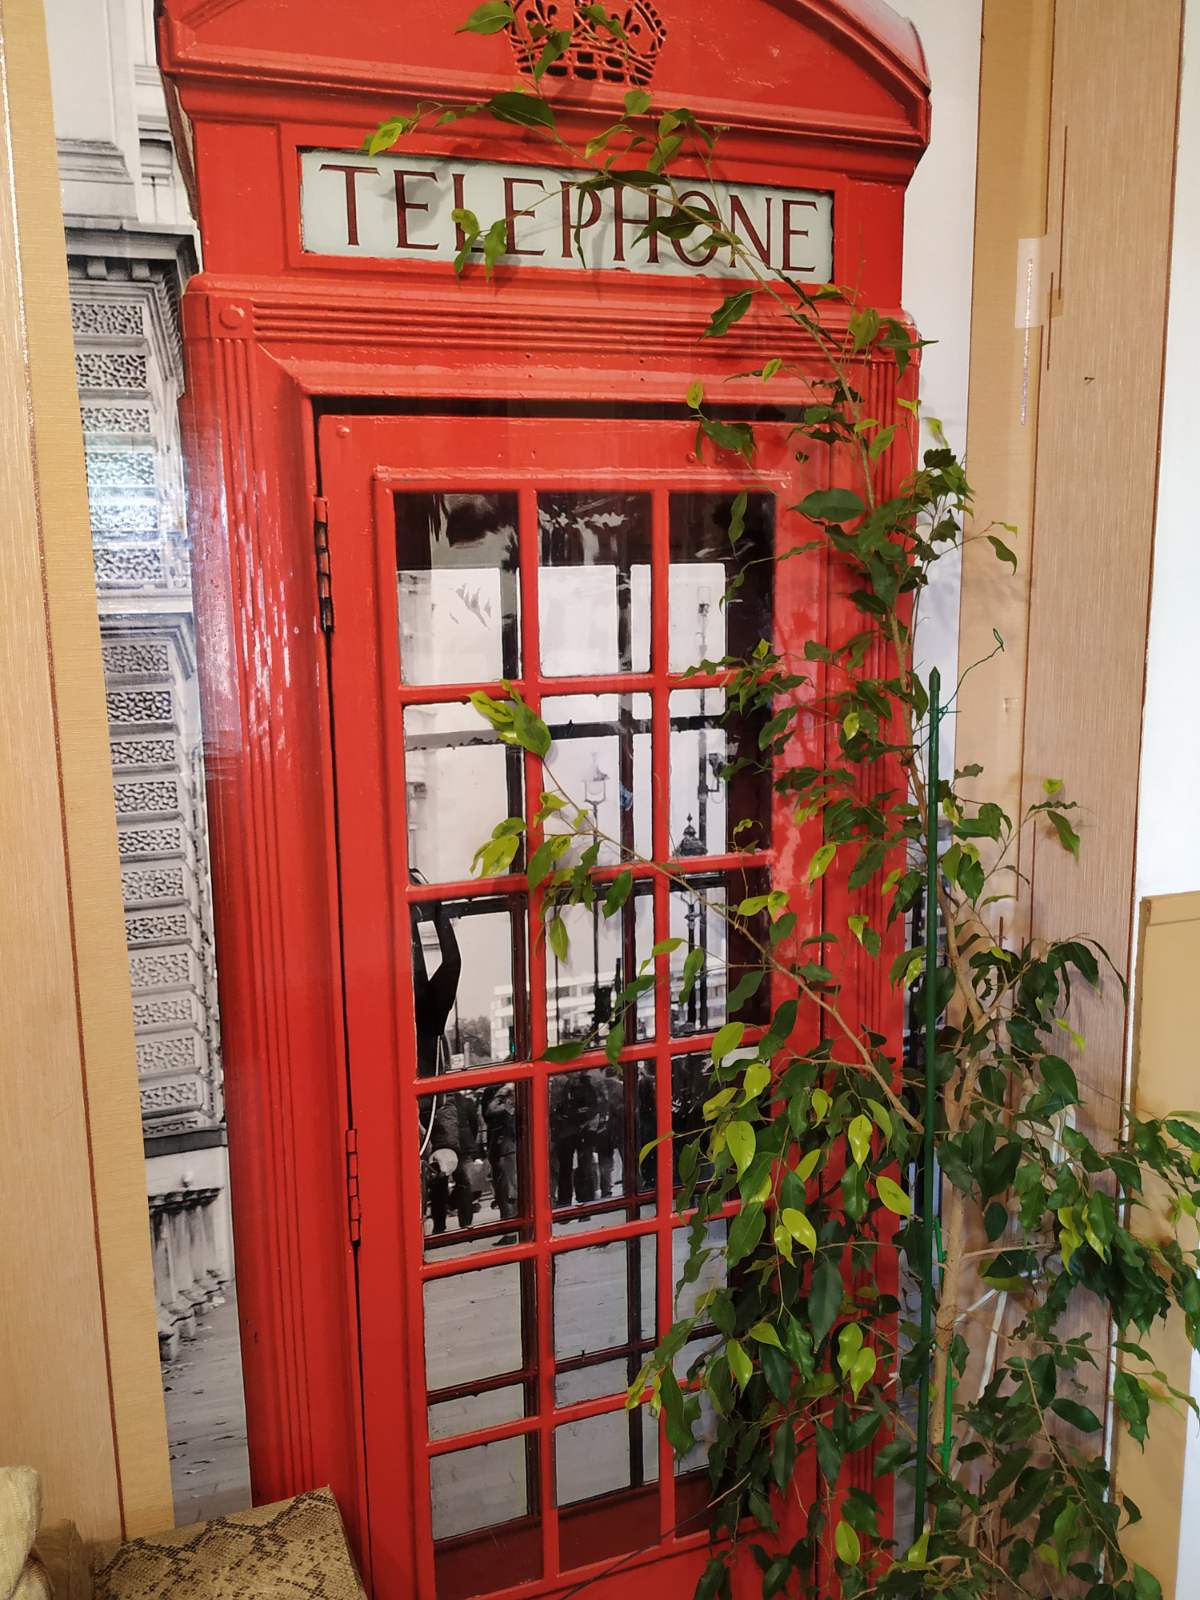 лондонская телефонная будка наклейка на двери в класс английского языка